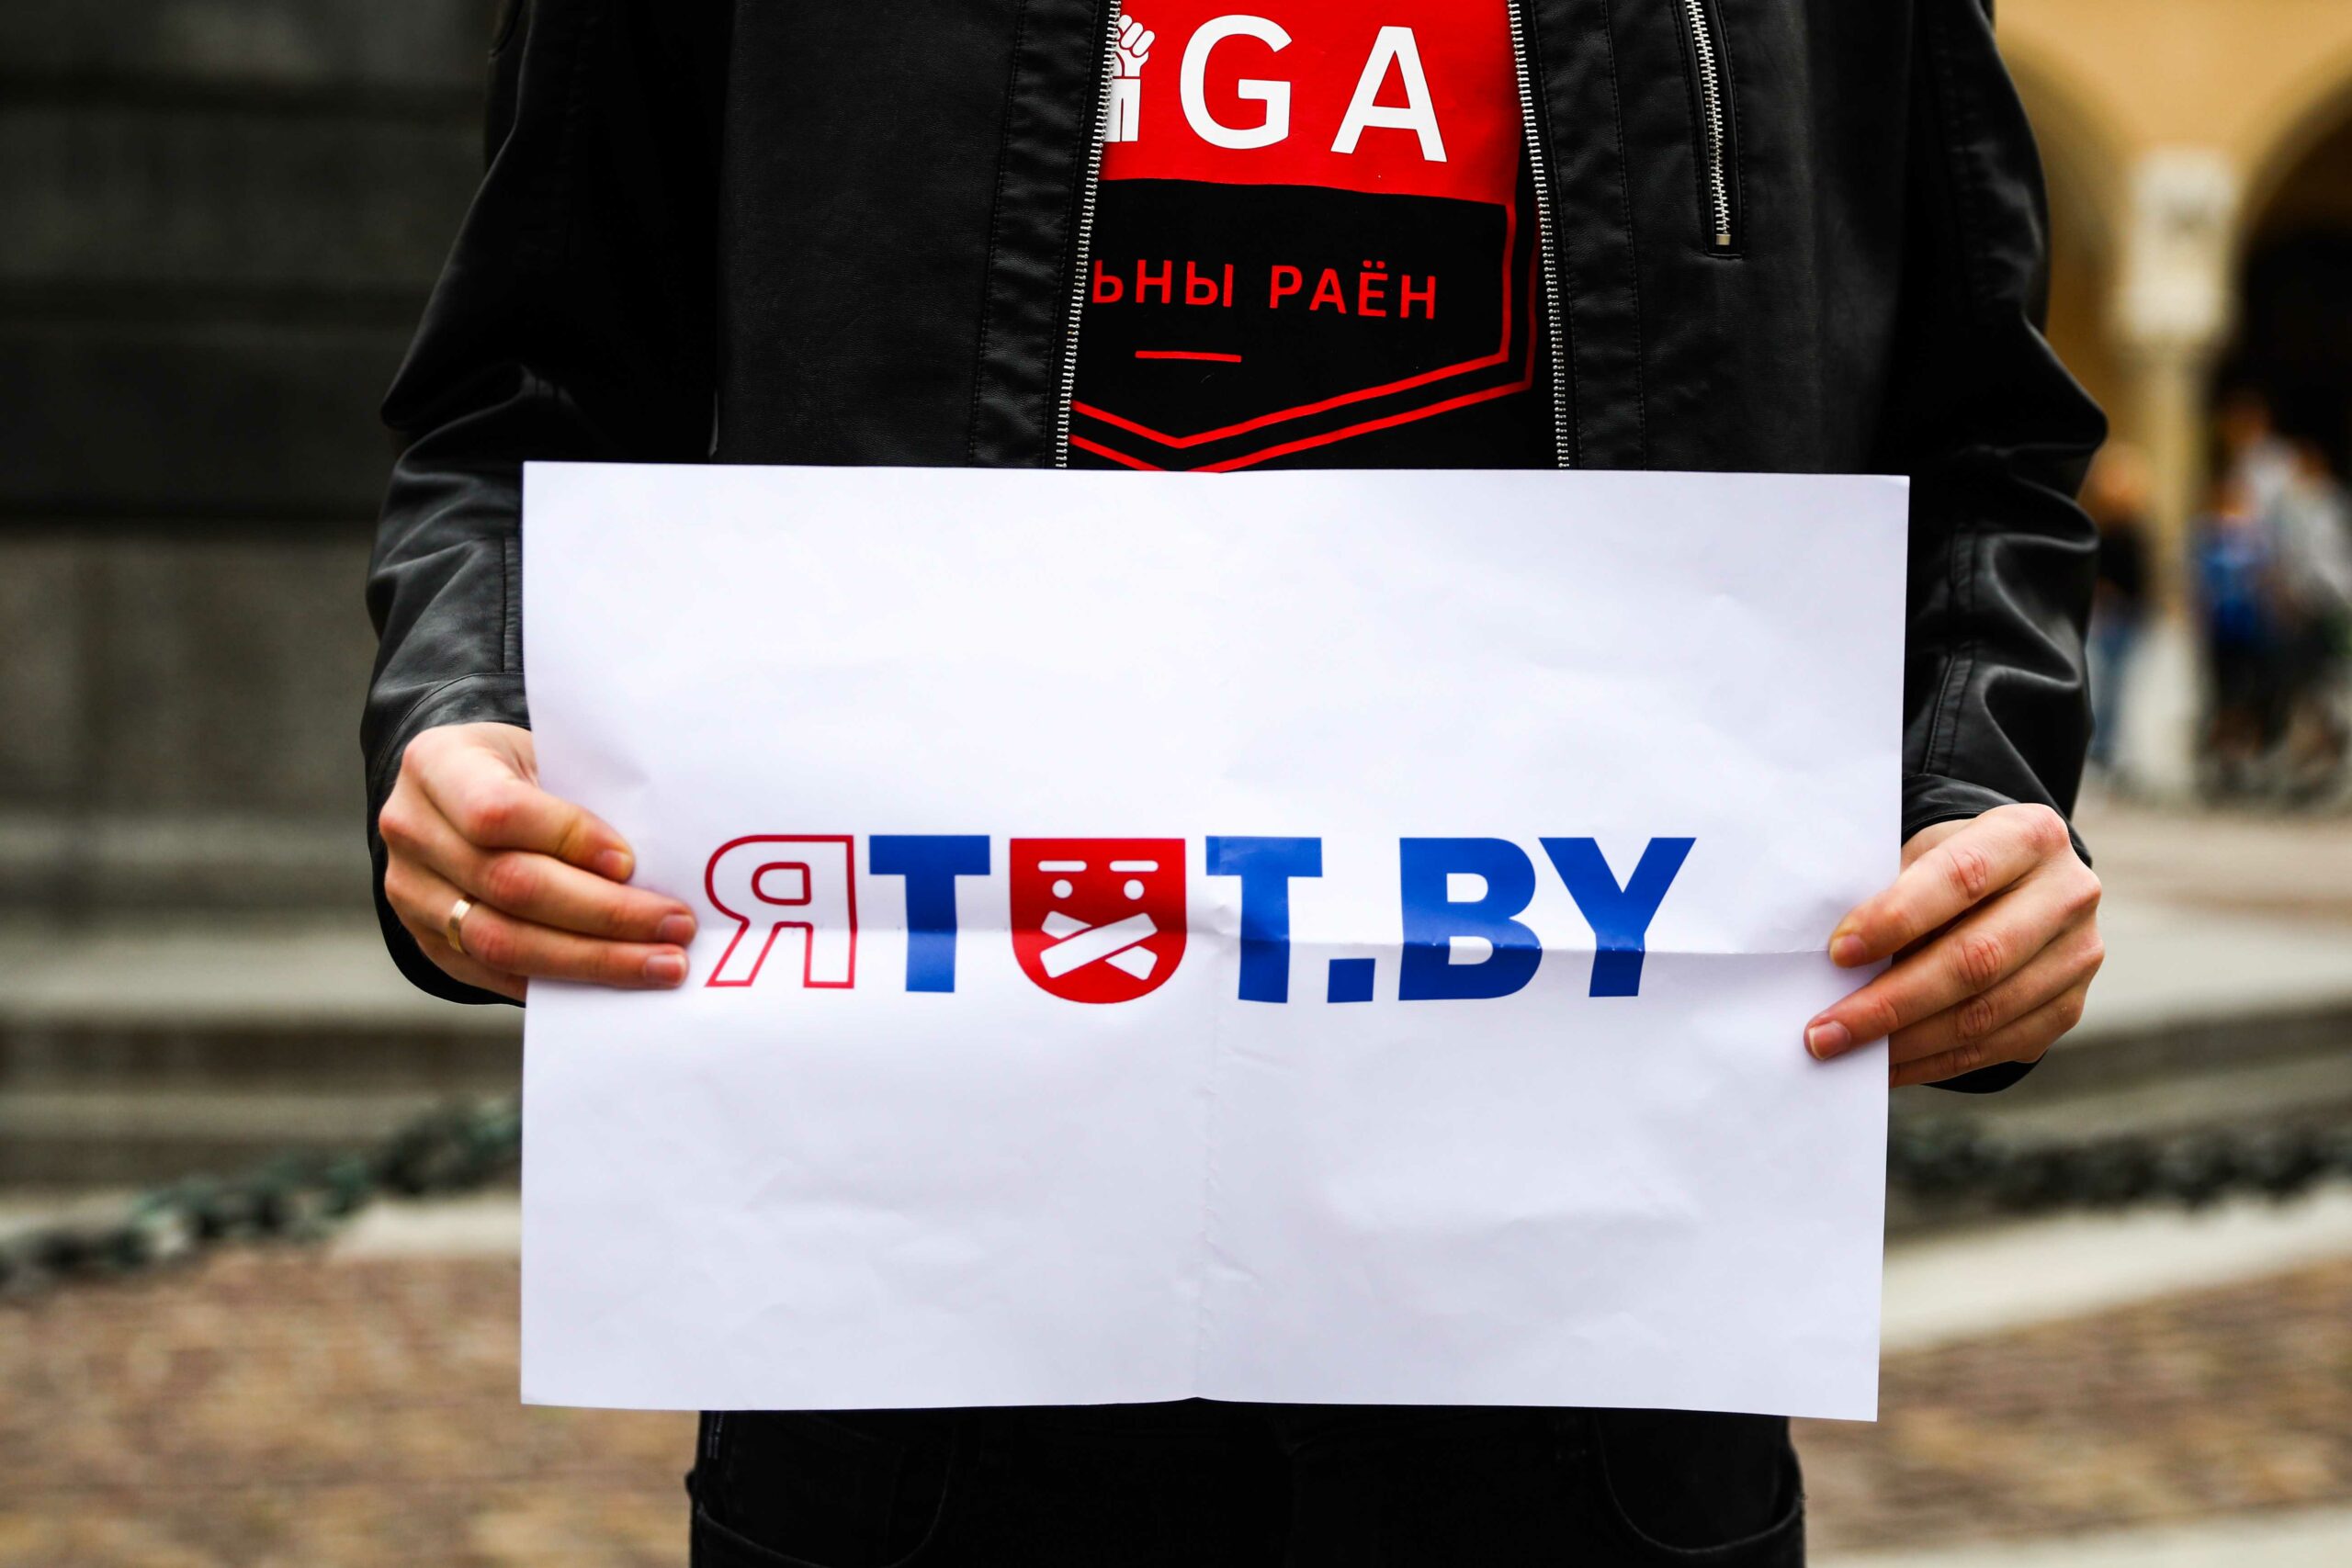 Медіа Білорусі через рік після протестів. Як TUT.BY перетворився на Zerkalo.io, щоб вижити